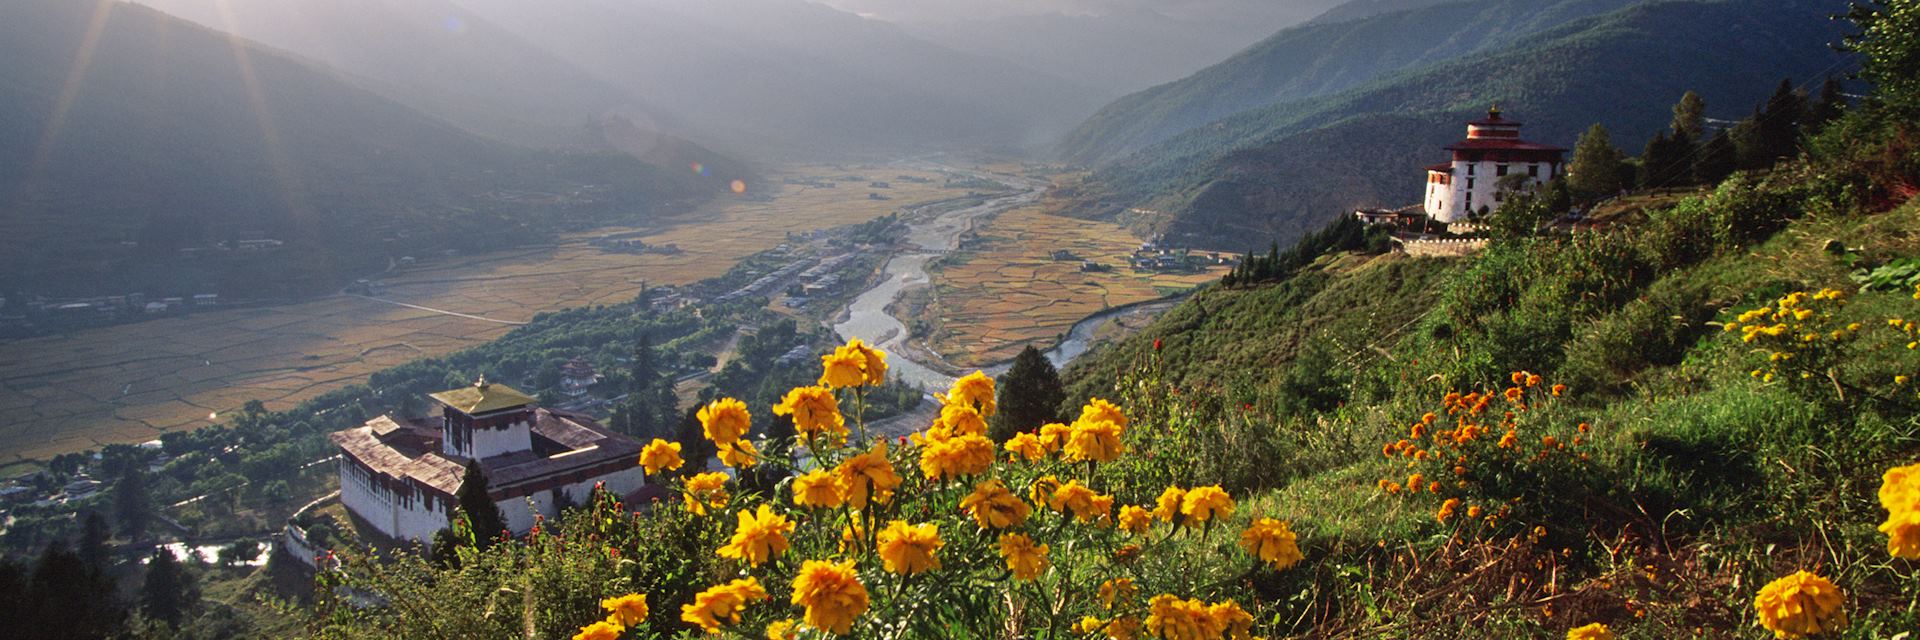 Mountain scenery in Bhutan